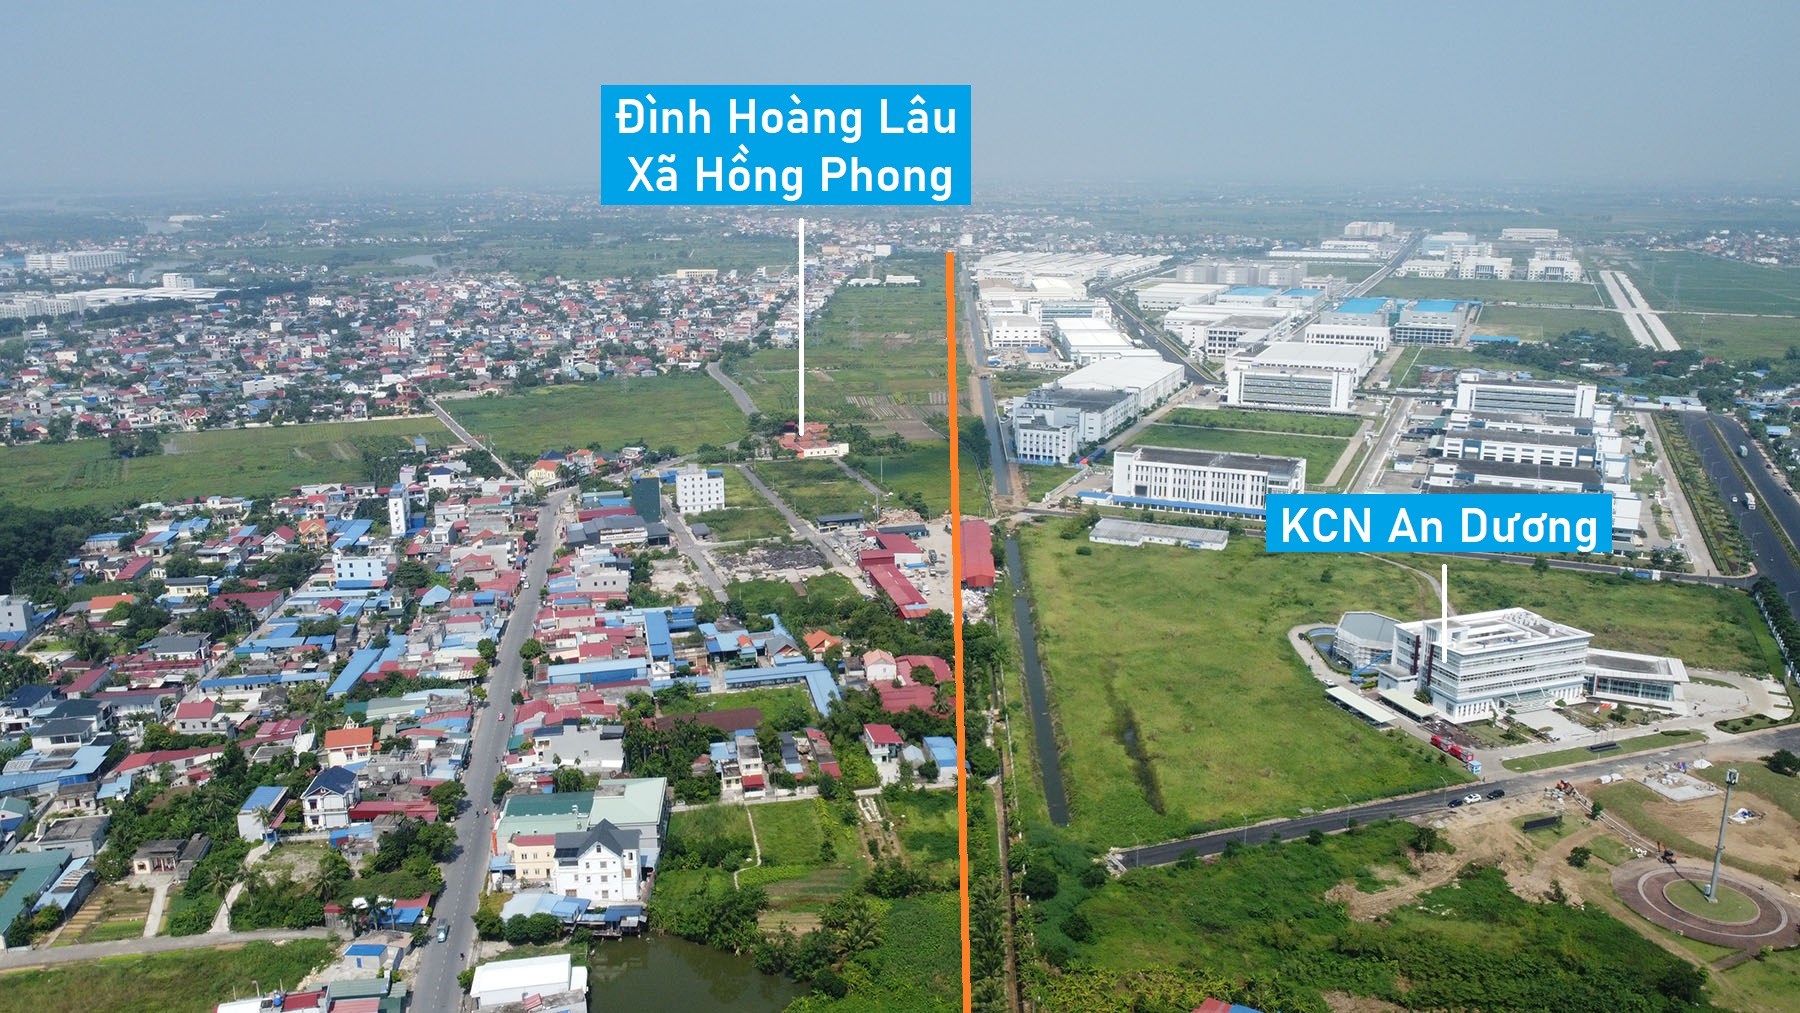 Toàn cảnh vị trí dự kiến quy hoạch cầu vượt sông Rế nối QL10 với KCN An Dương, Hải Phòng